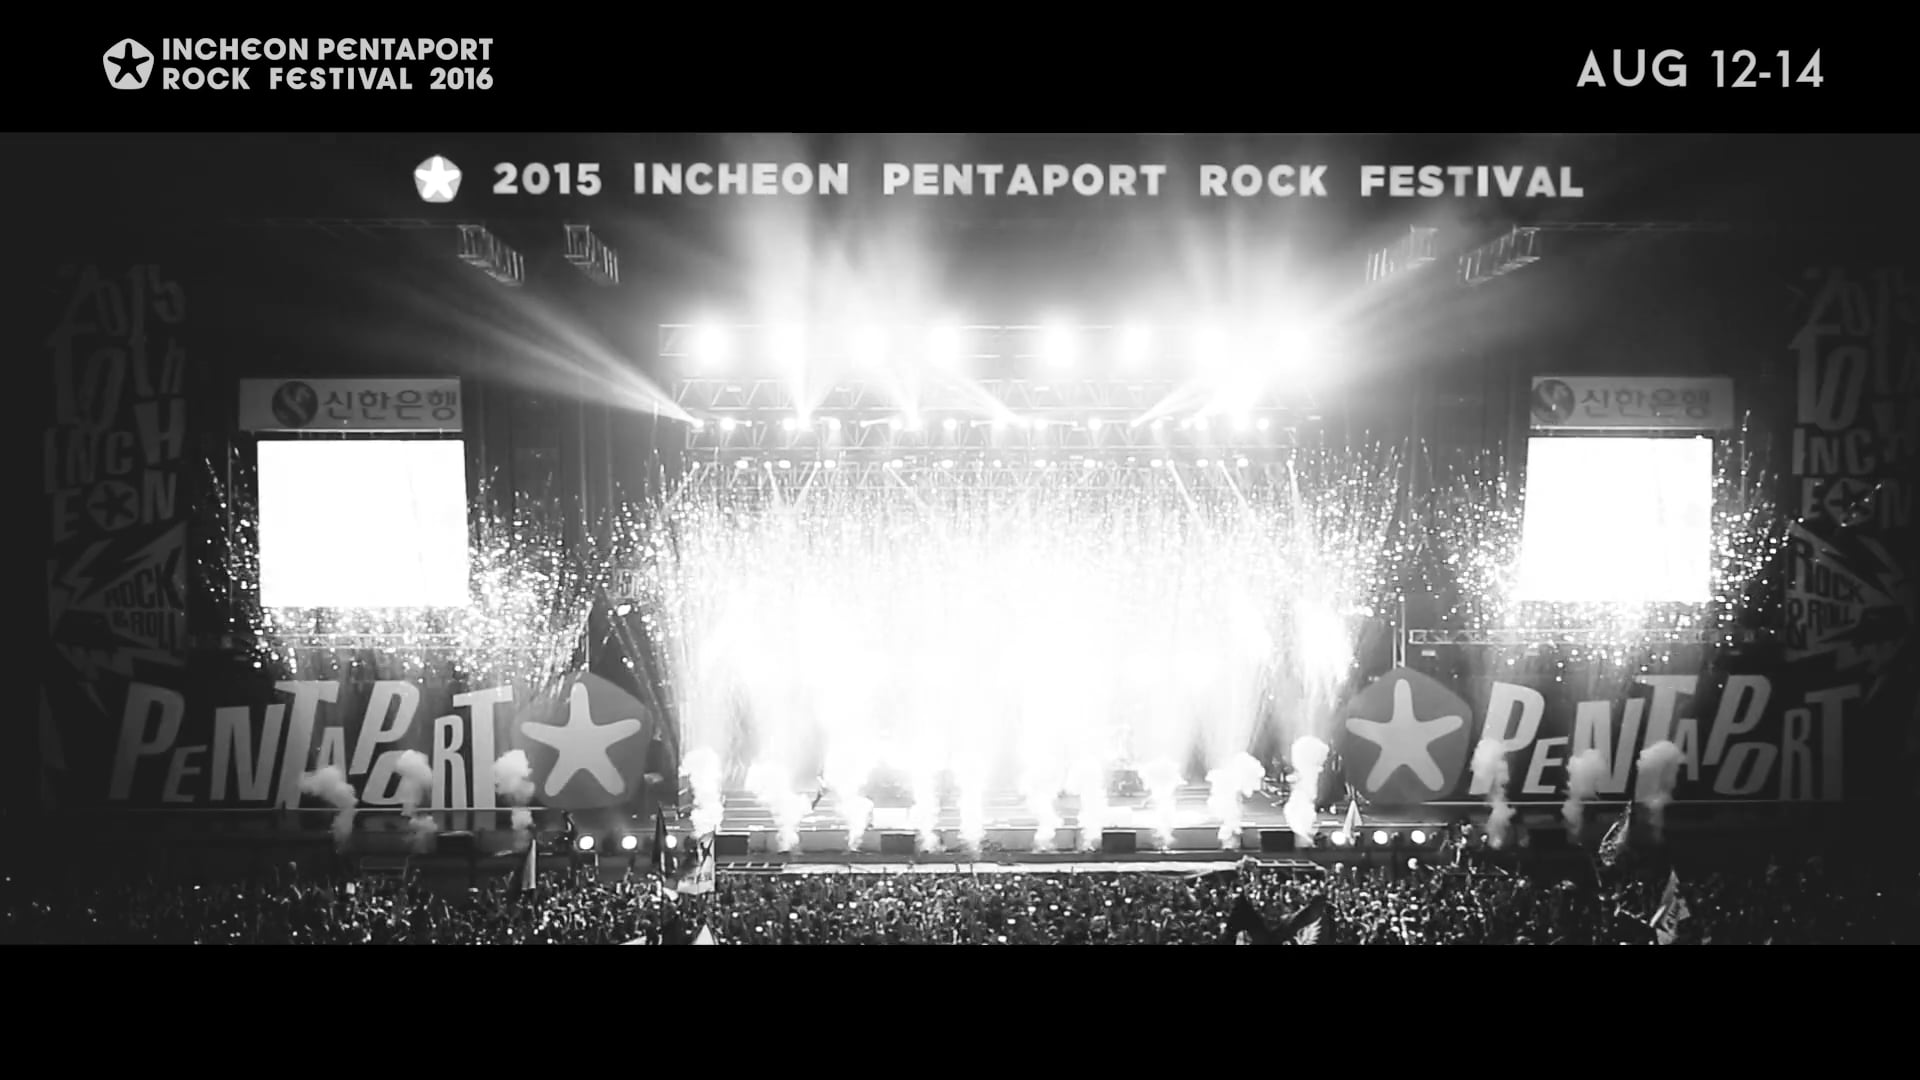 INCHEON PENTAPORT ROCK FESTIVAL 2016 (TVC Teaser)